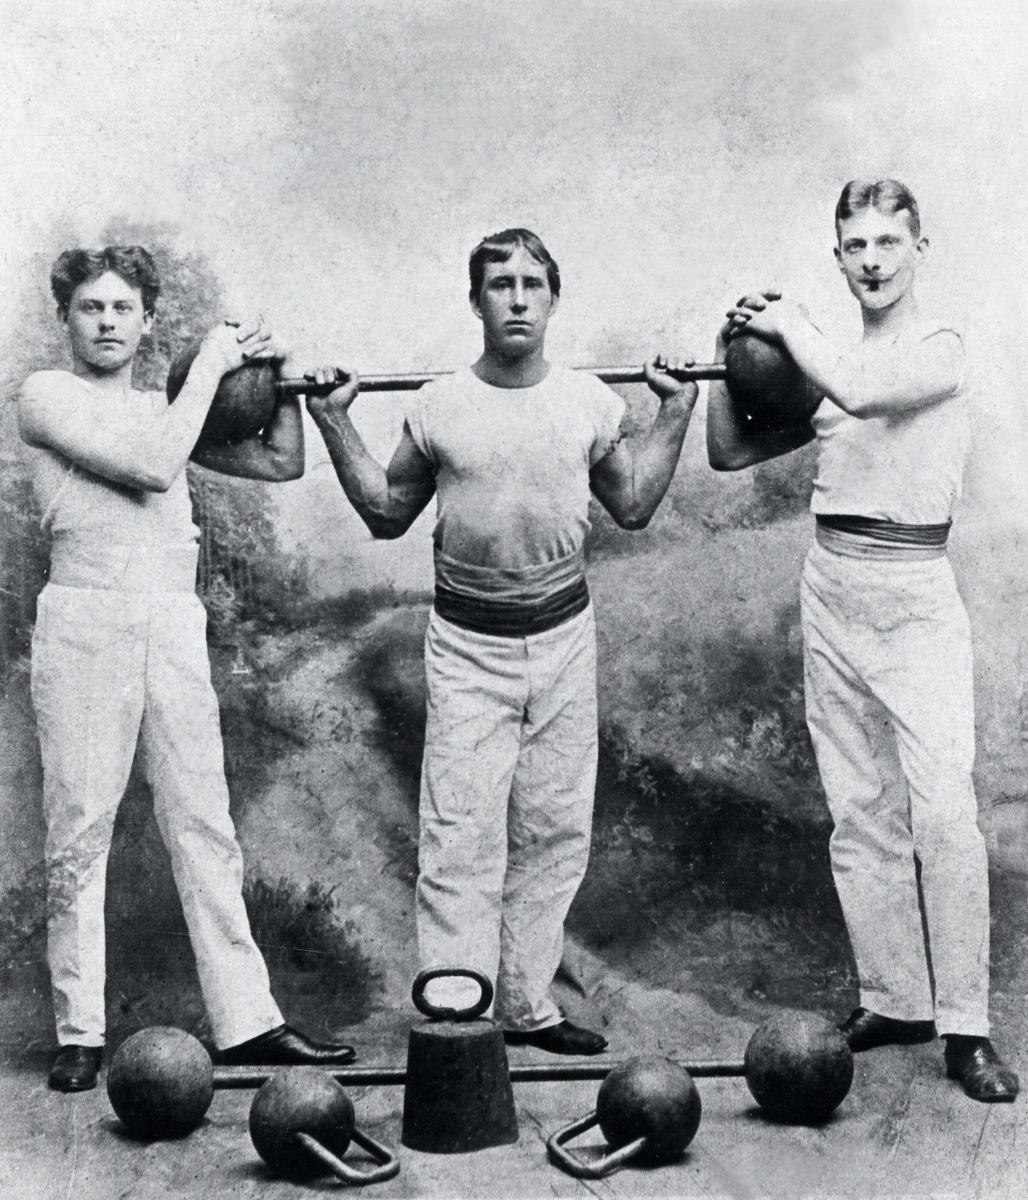 Några medlemmar ur Växjö atletklubb, Växjö ca 1910.